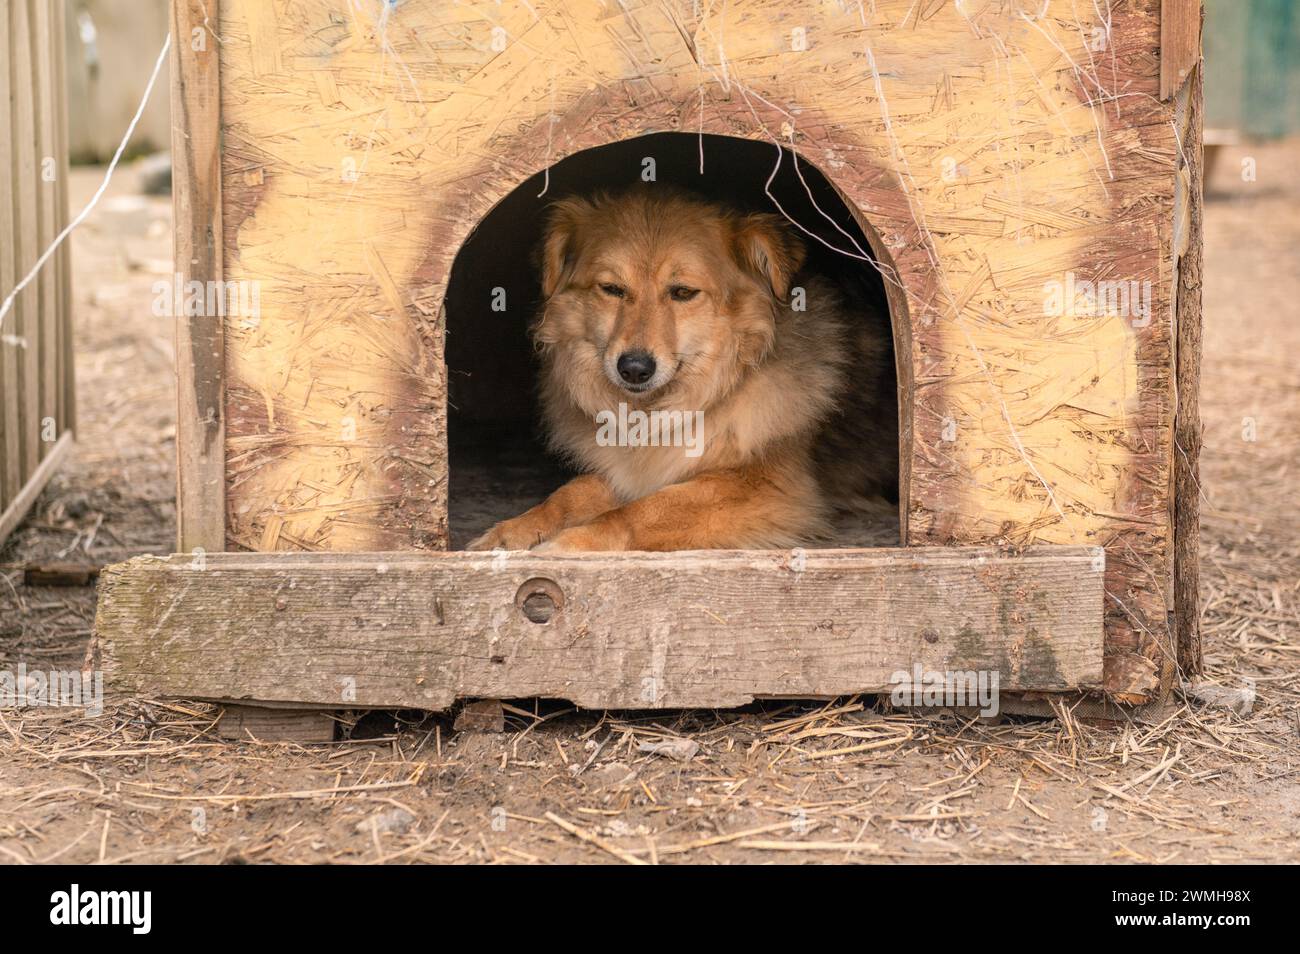 Perro callejero en una perrera en un refugio de animales. Solitario triste abandonado perro callejero. Concepto de rescate animal Foto de stock